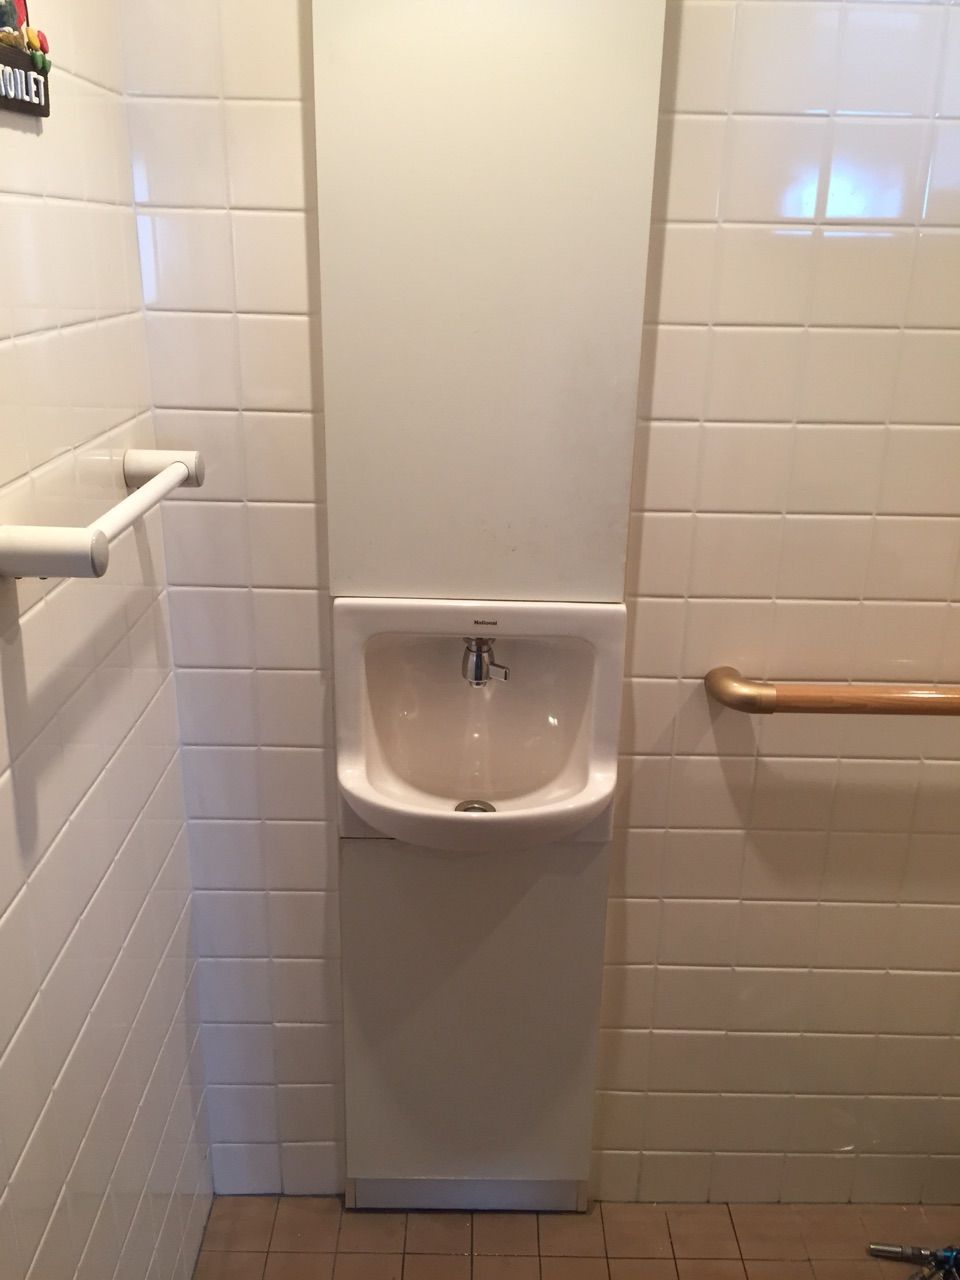 トイレ手洗い 洗面台 水もれ パナソニック Mym 水もれドルフィンの安心だいじょうブログ